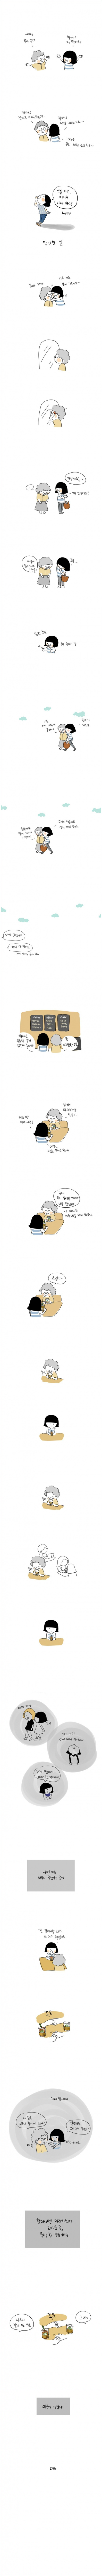 할머니와 카페에 가는 만화1.jpg